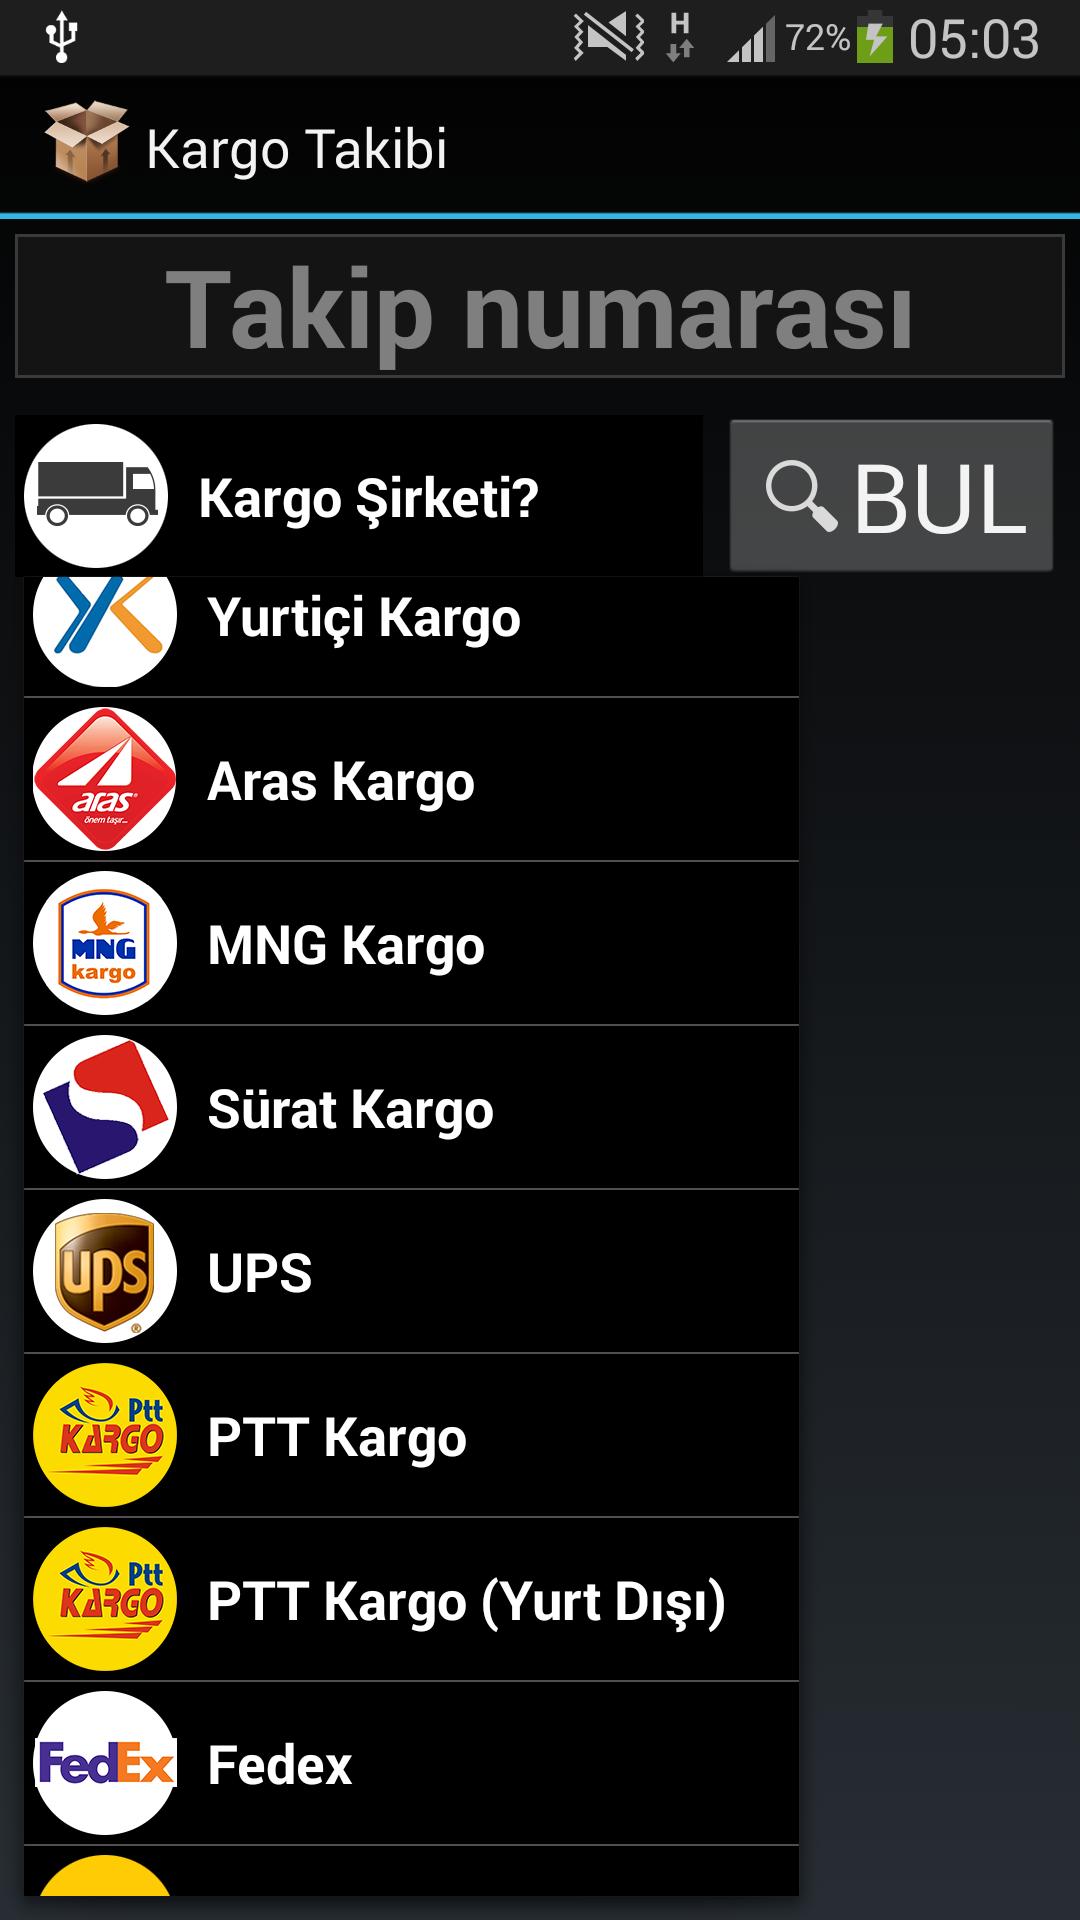 Kargo Takibi pour Android - Téléchargez l'APK